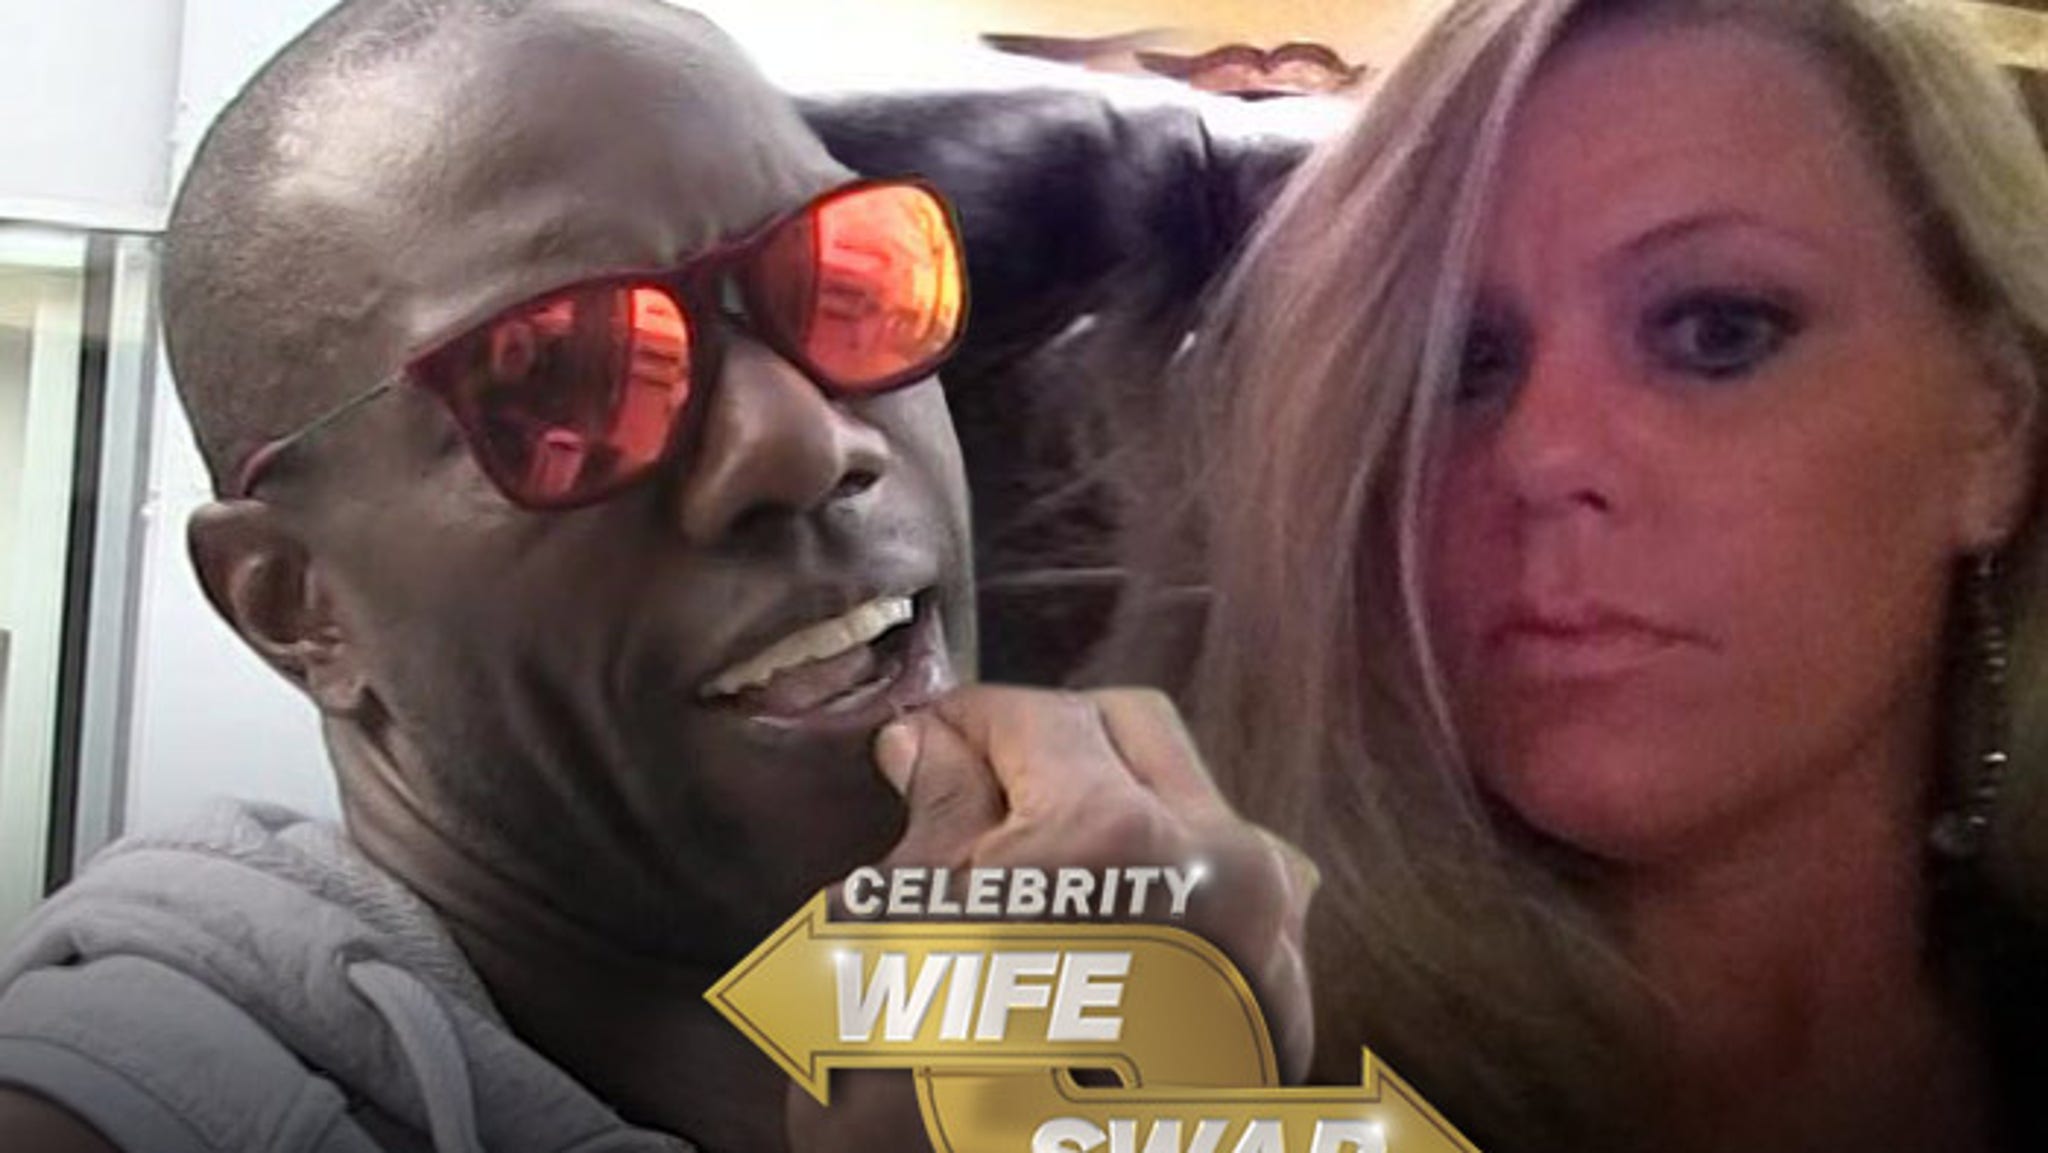 Joe piscopo celebrity wife swap